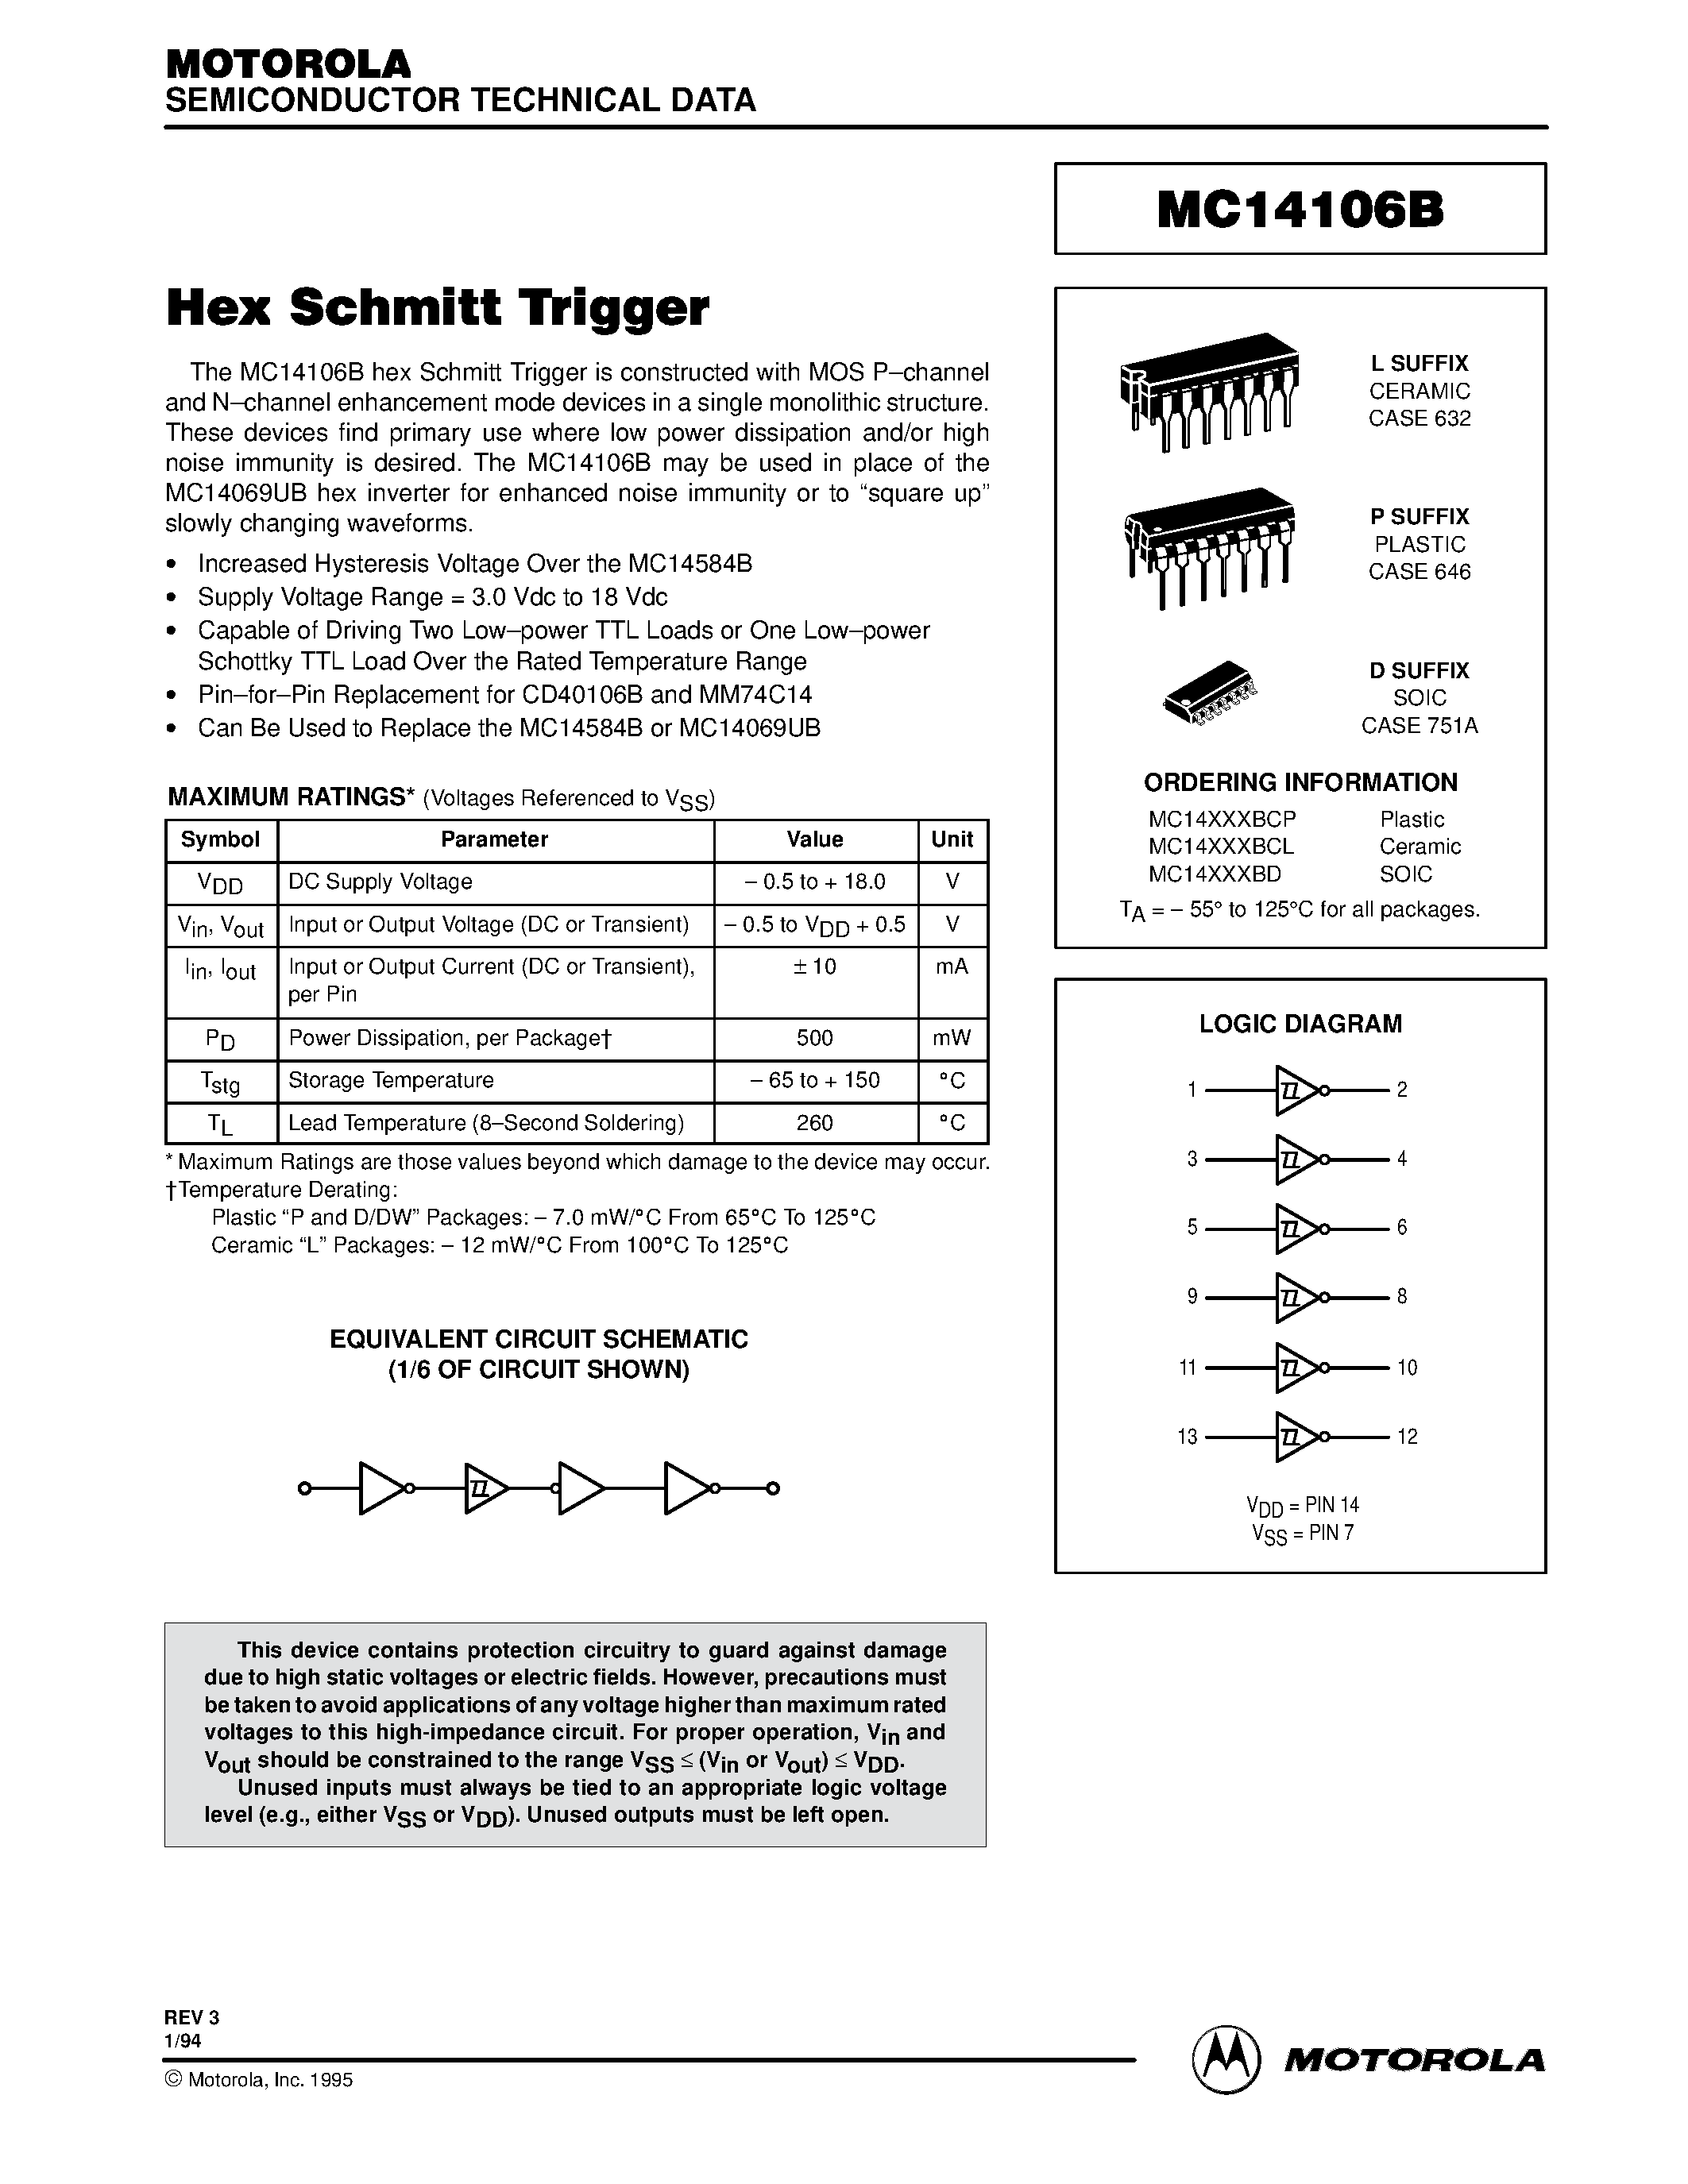 Даташит MC14106BD - Hex Schmitt Trigger страница 1